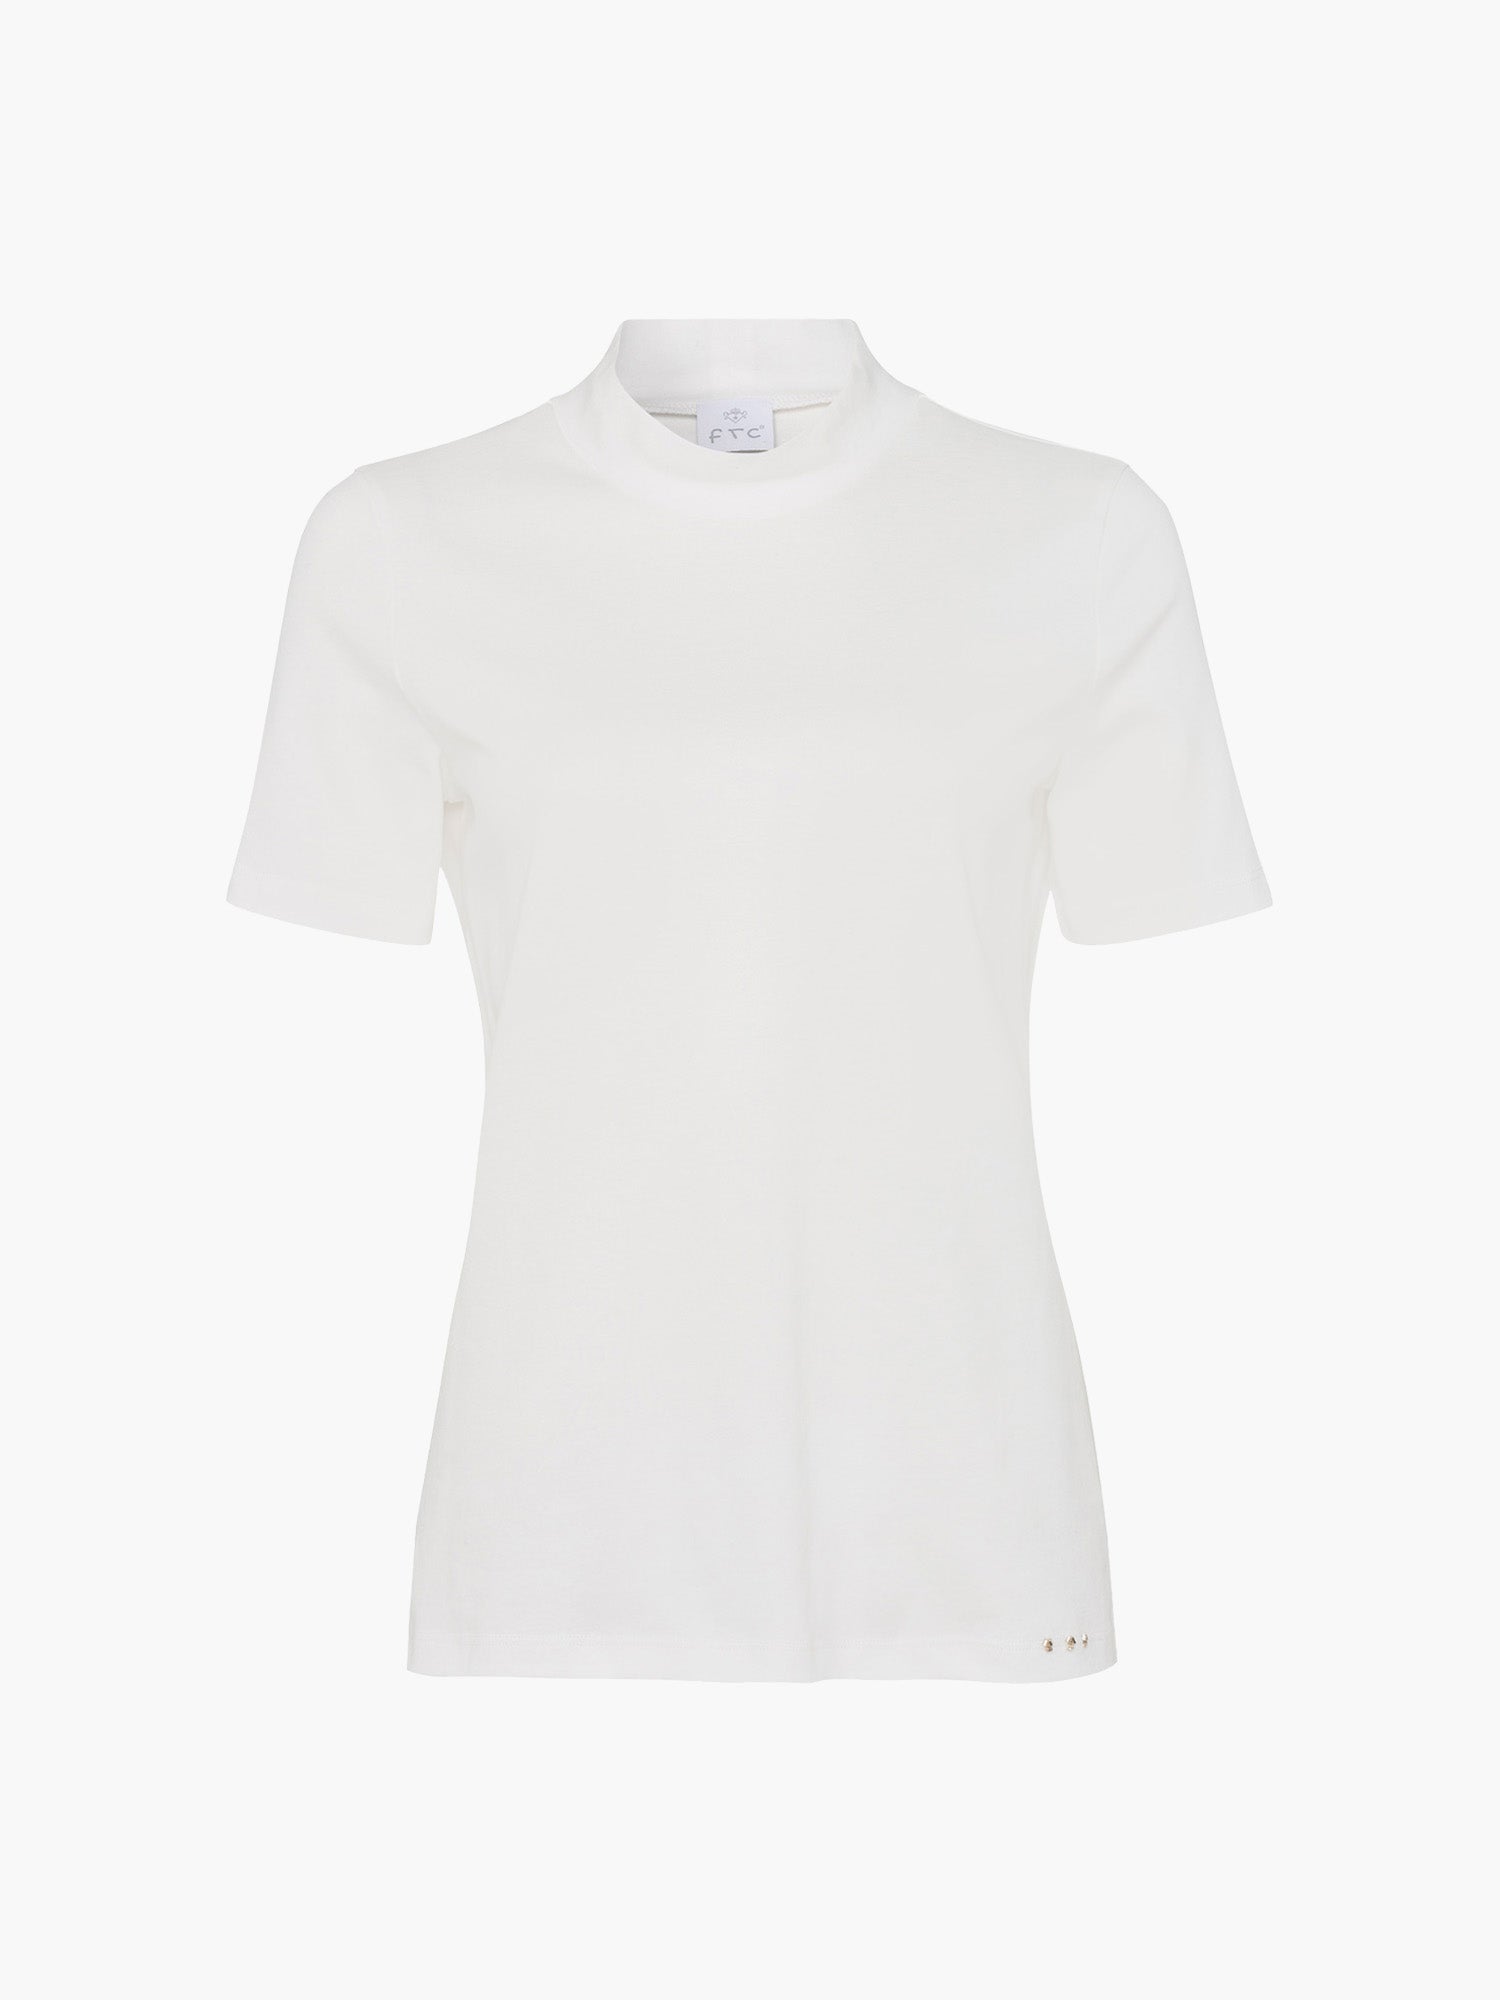 2 100% Organic Cotton-Shirts-S-Pristine White-MUNICH_VILLAGE-by-ARCHIVIST